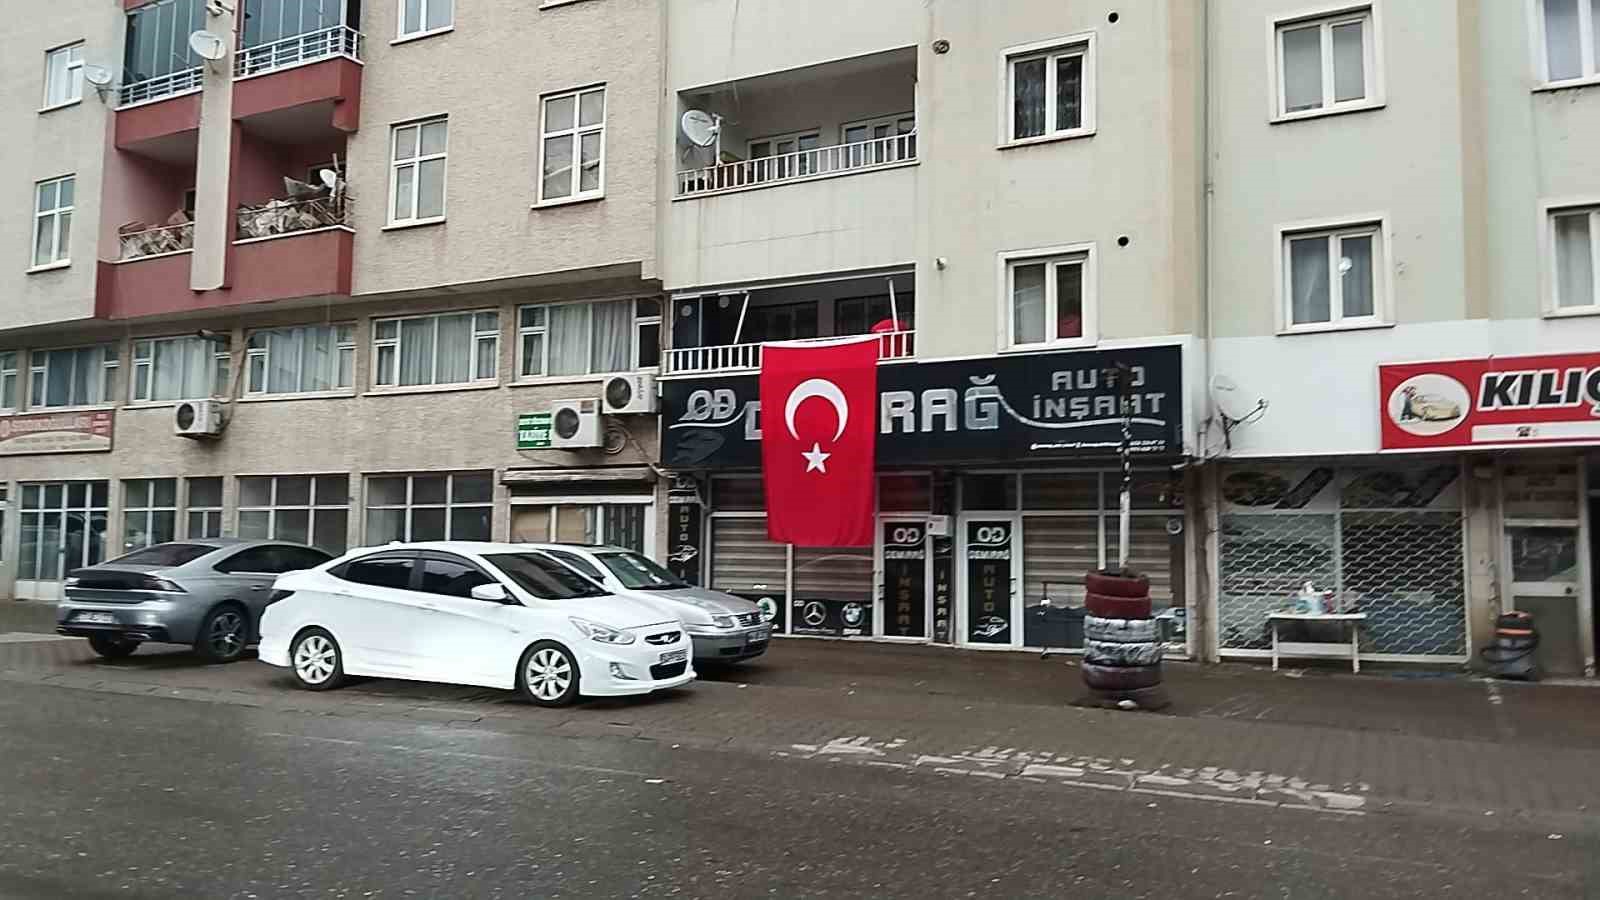 Bingöllü şehidin dede evine Türk bayrağı asıldı
